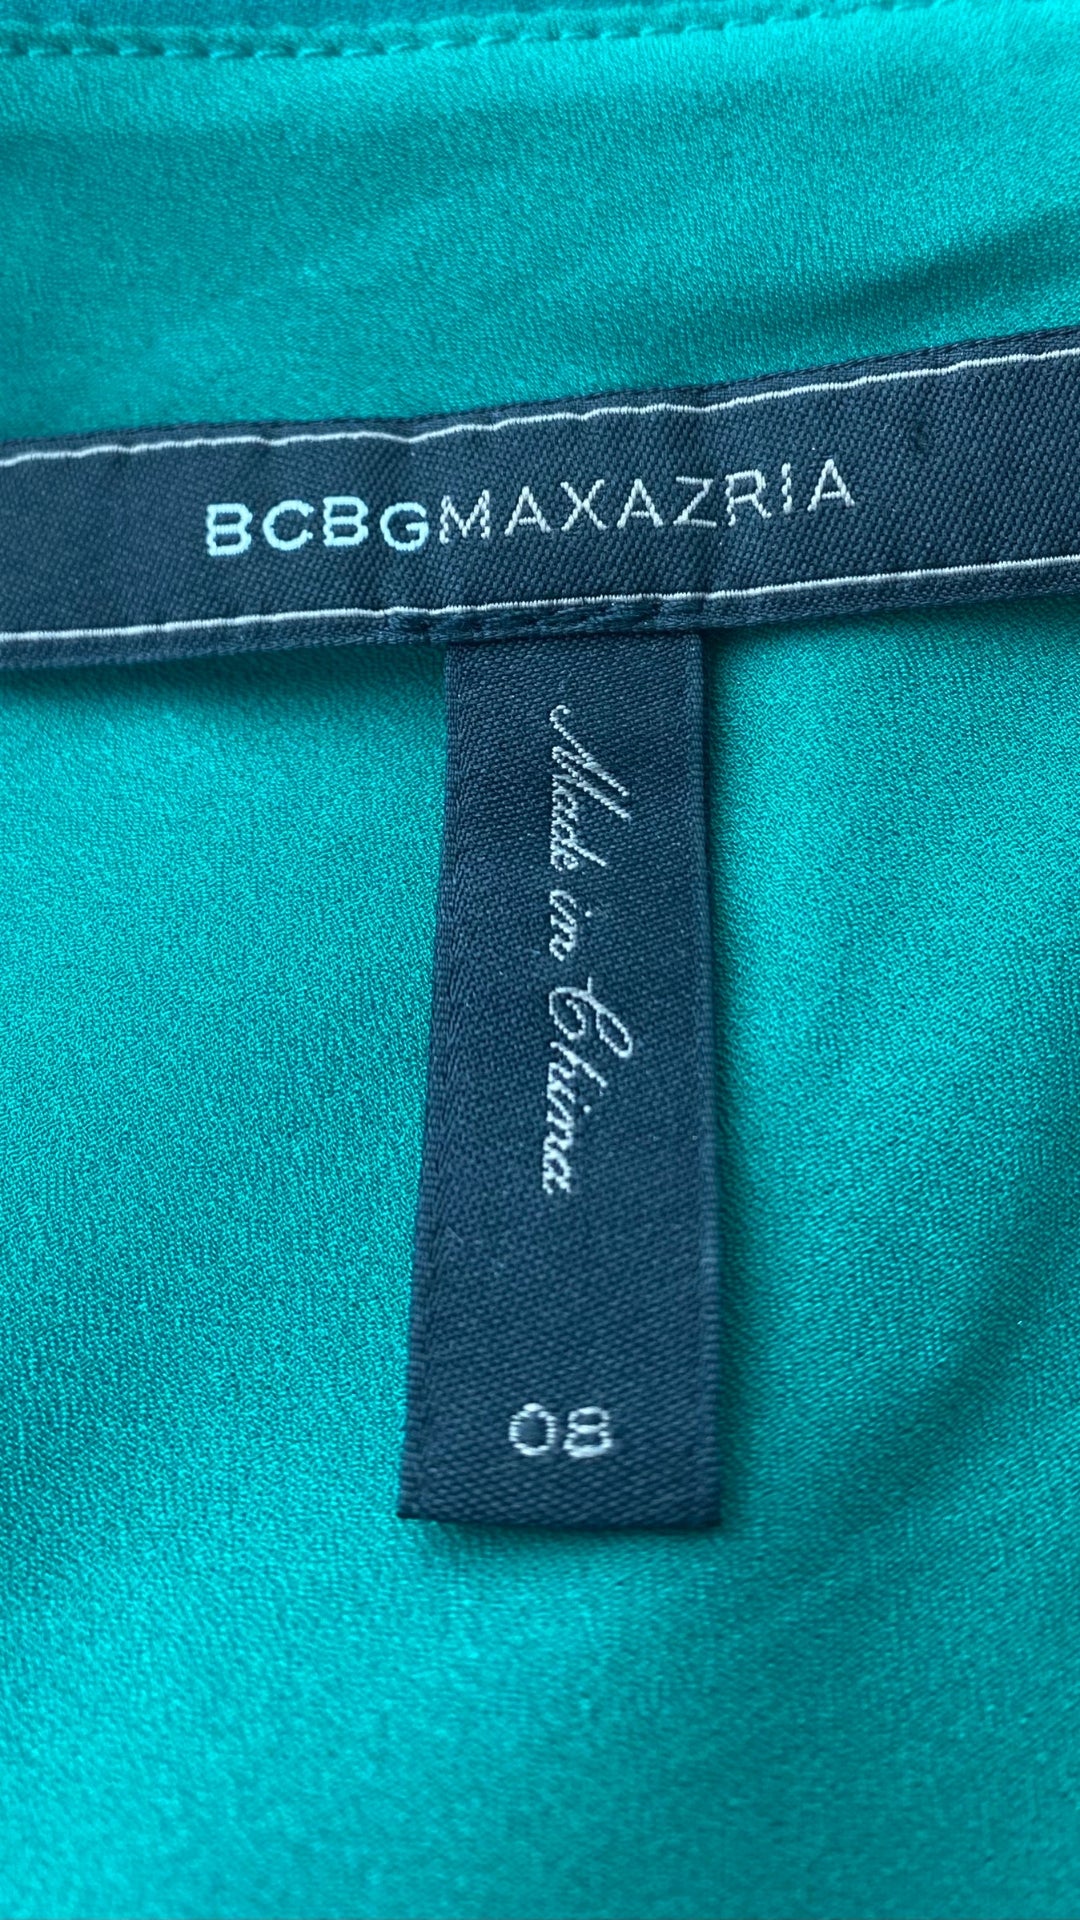 Robe a une bretelle fluide vert gazon, marque BCBG Max Azria, taille 8. Vue de l'étiquette de marque et taille.